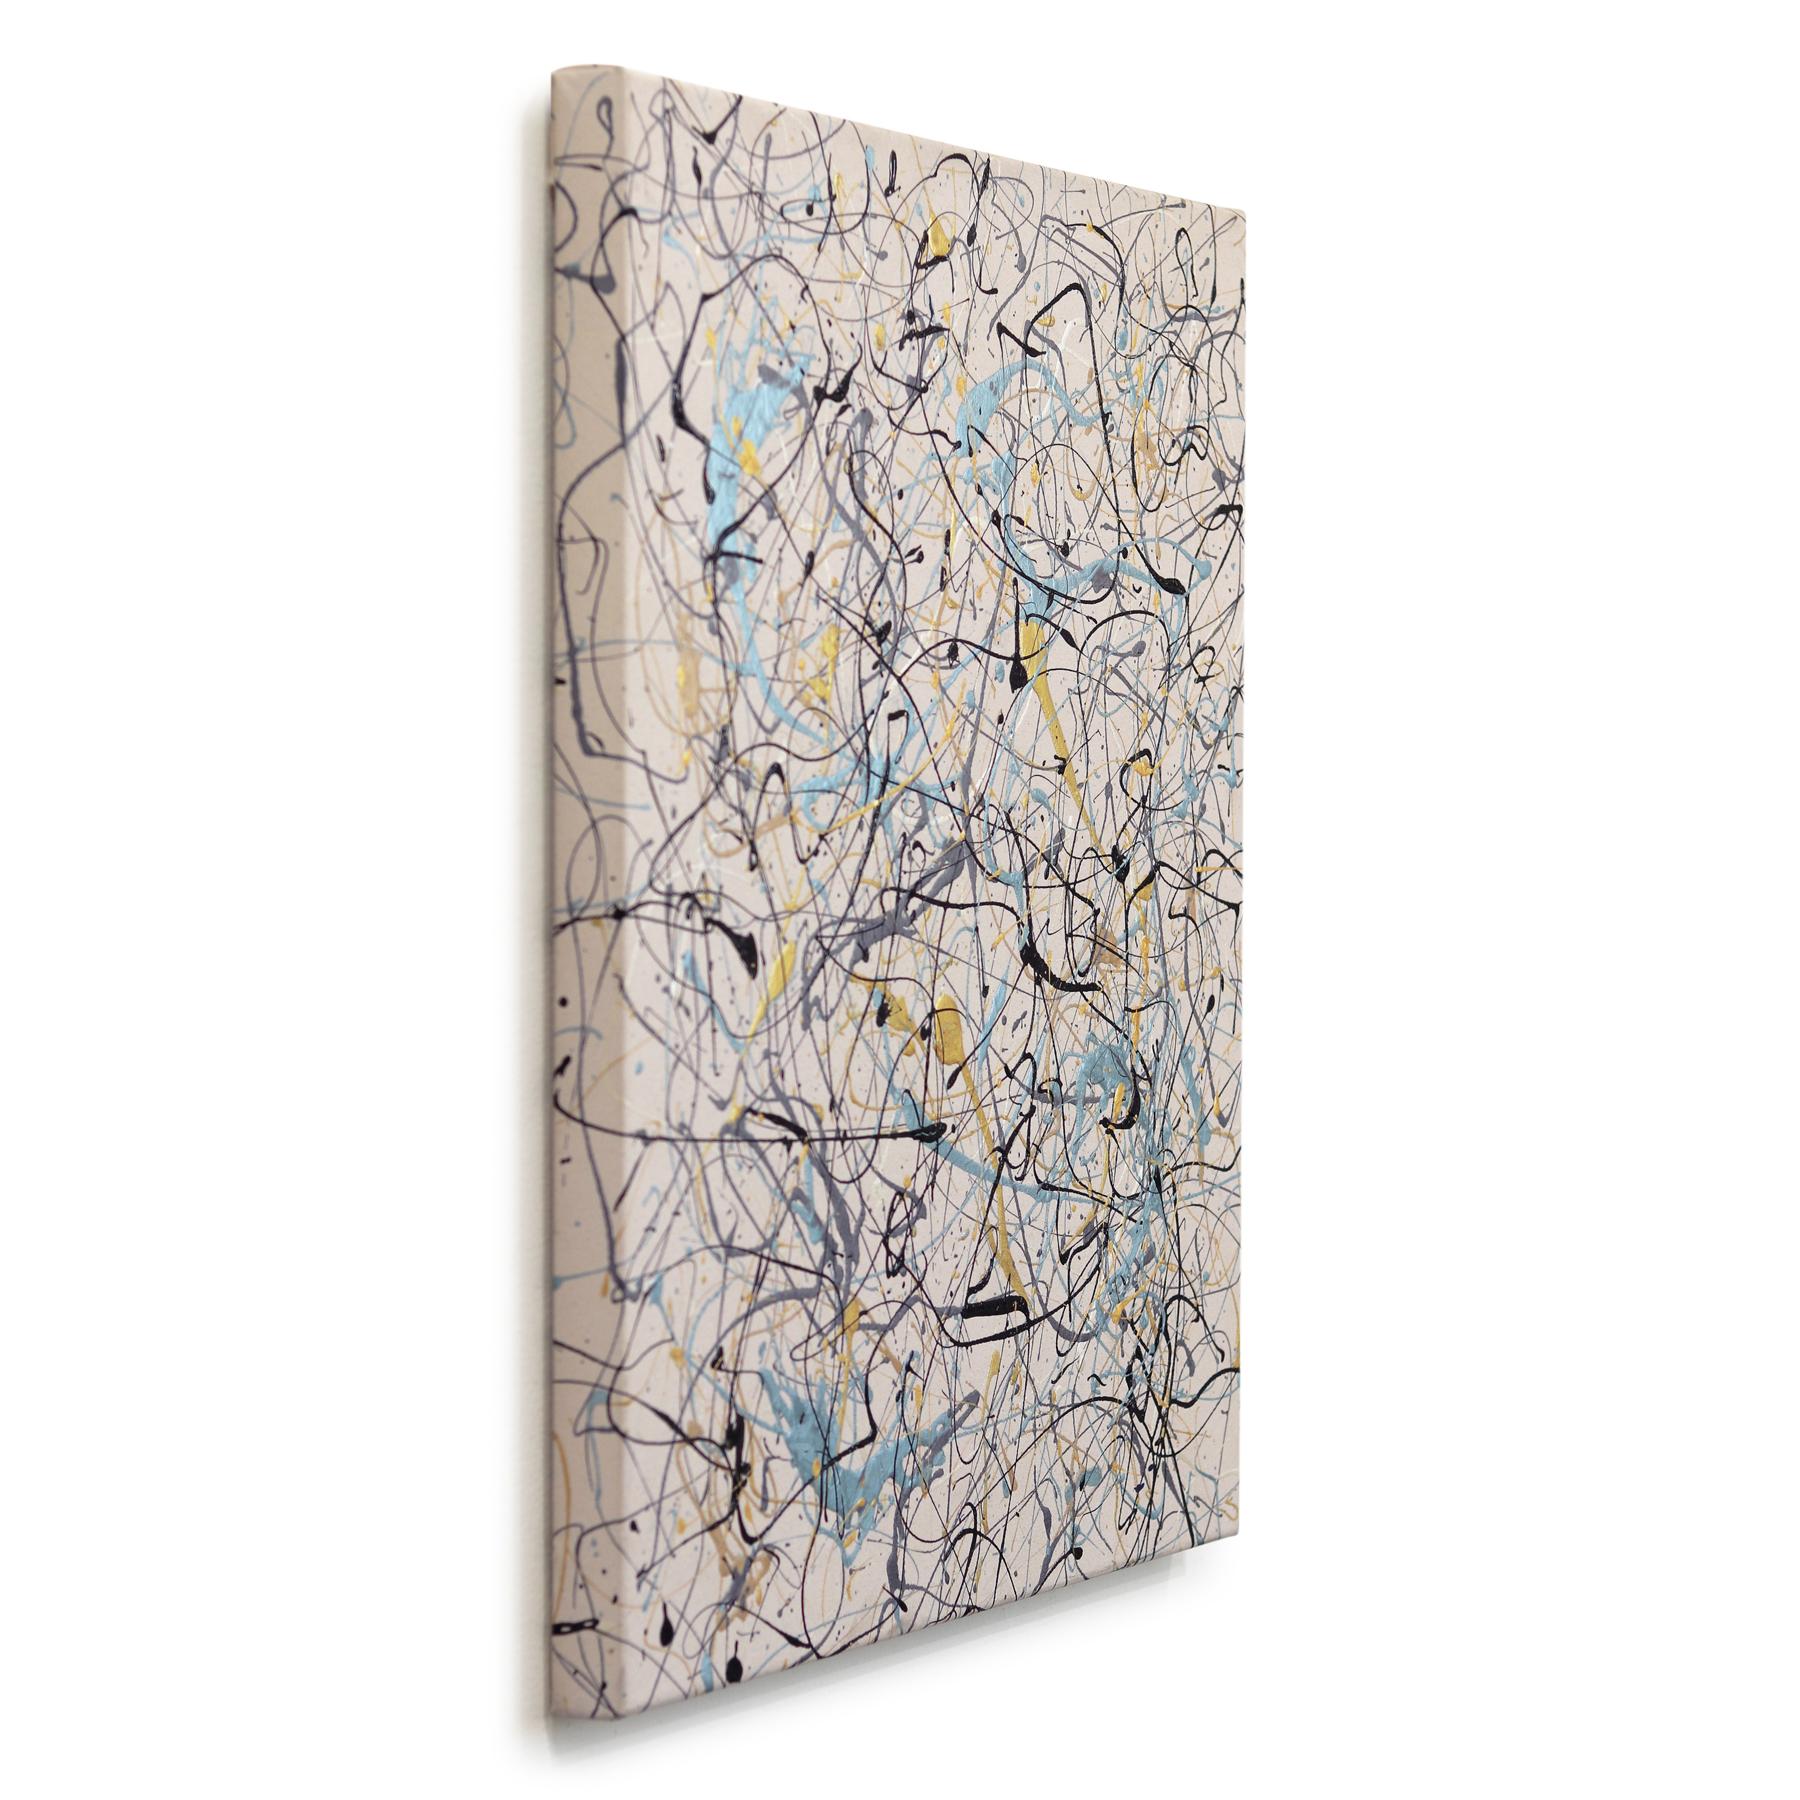 L'artiste de Los Angeles Marc Raphael séduit par ses peintures influencées par le mouvement expressionniste abstrait de New York. Après avoir découvert l'œuvre de Jackson Pollock pour la première fois dans les années 90, Raphael a été séduit par